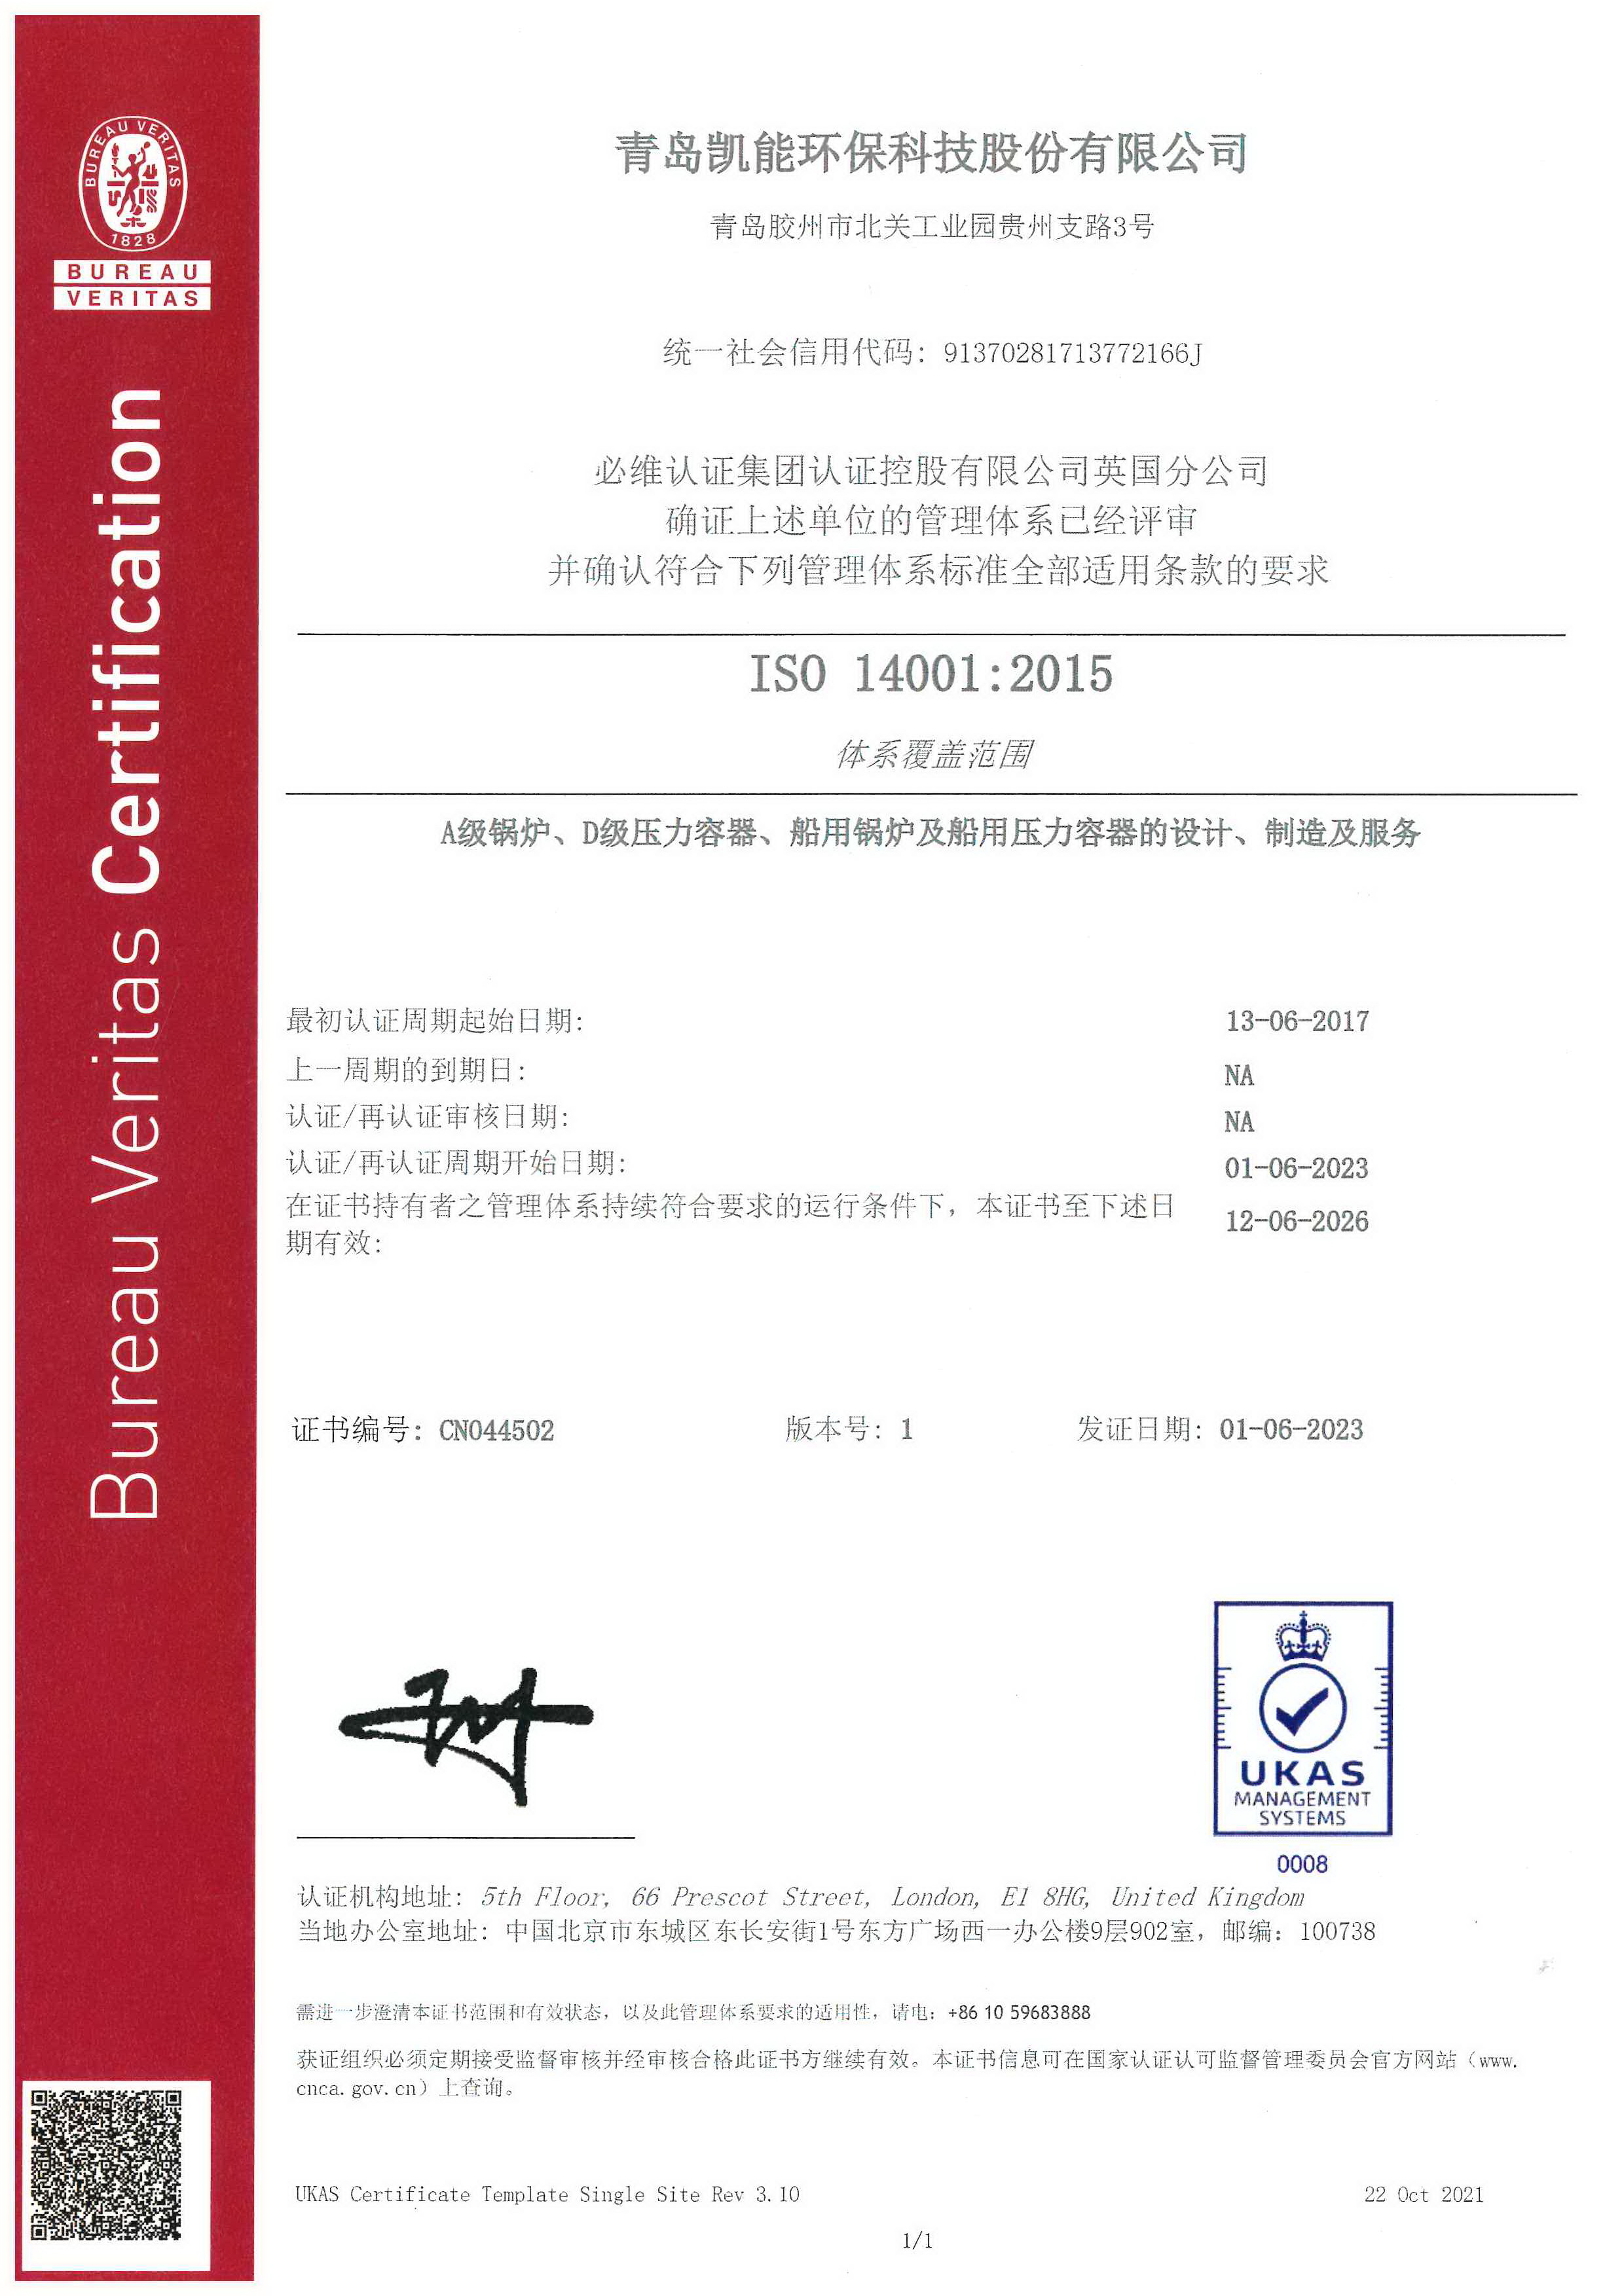 新葡的京集团350vip8888职业健康管理体系证书